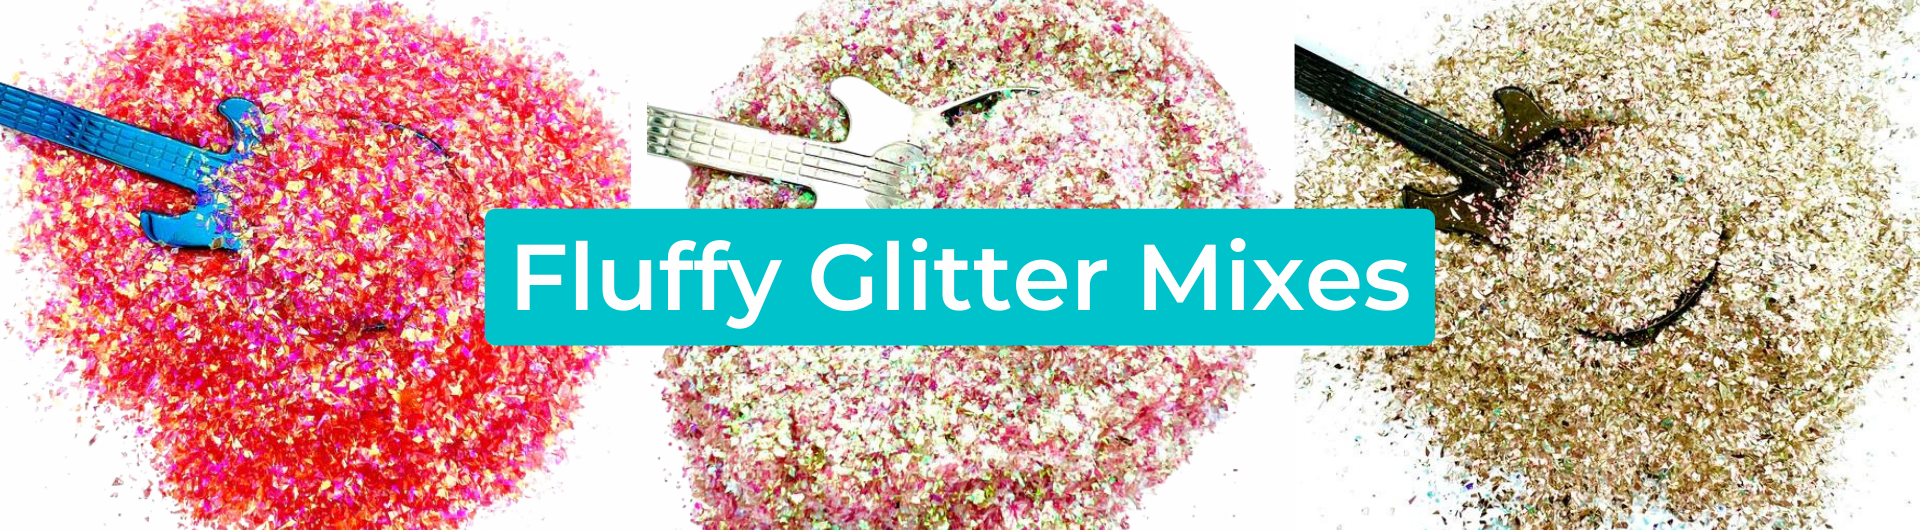 Fluffy Glitter Mixes